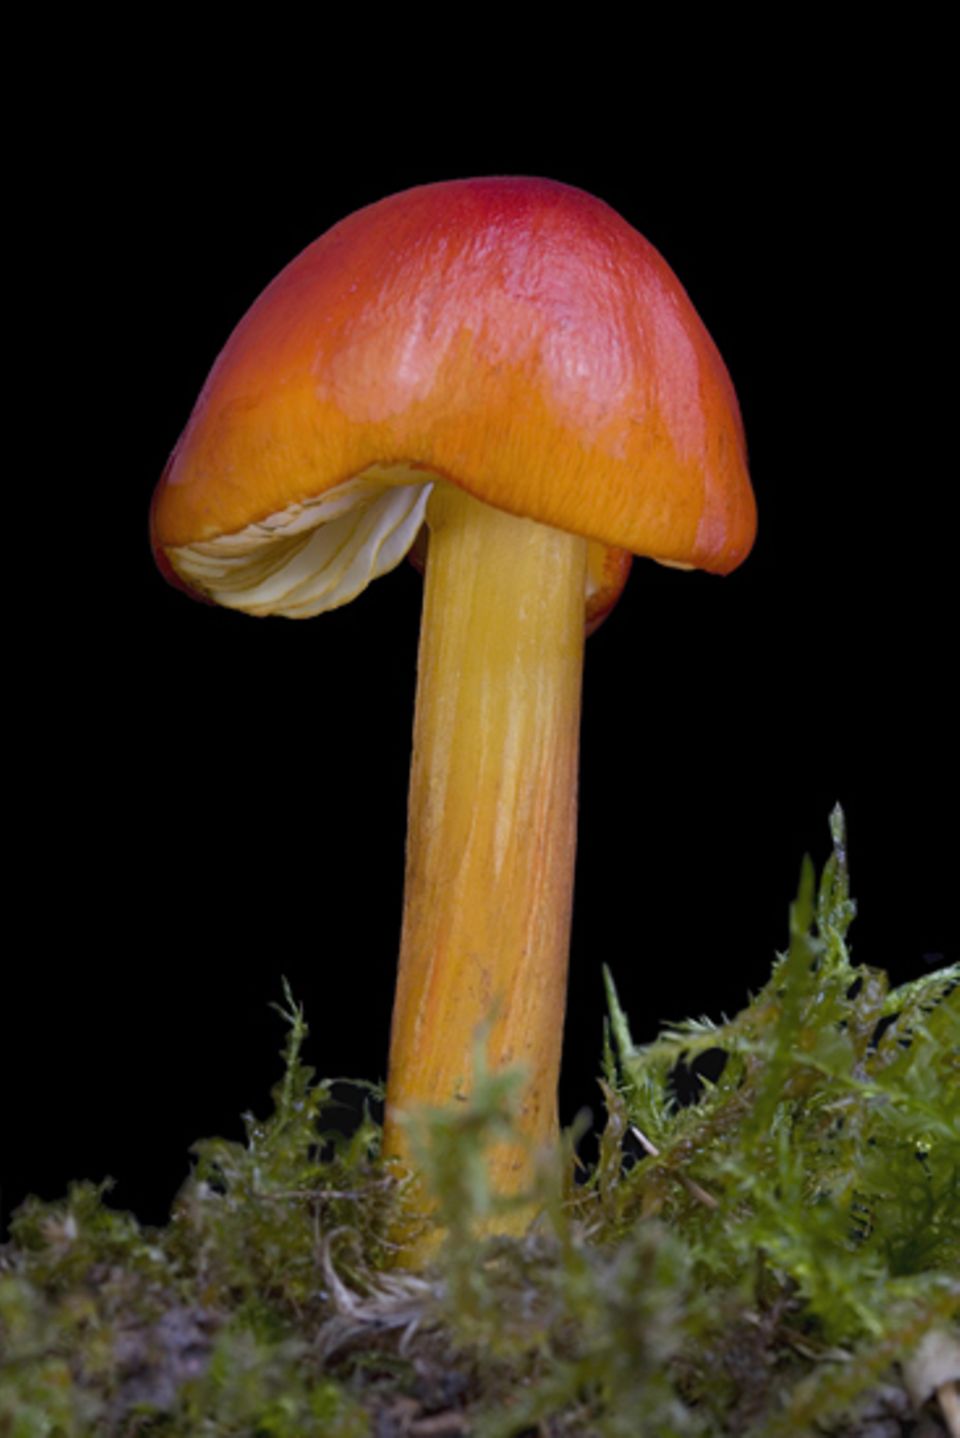 Pilze: Kirschrot, kiwigrün und safrangelb leuchtender Pilz aus der Gattung der Saftlinge